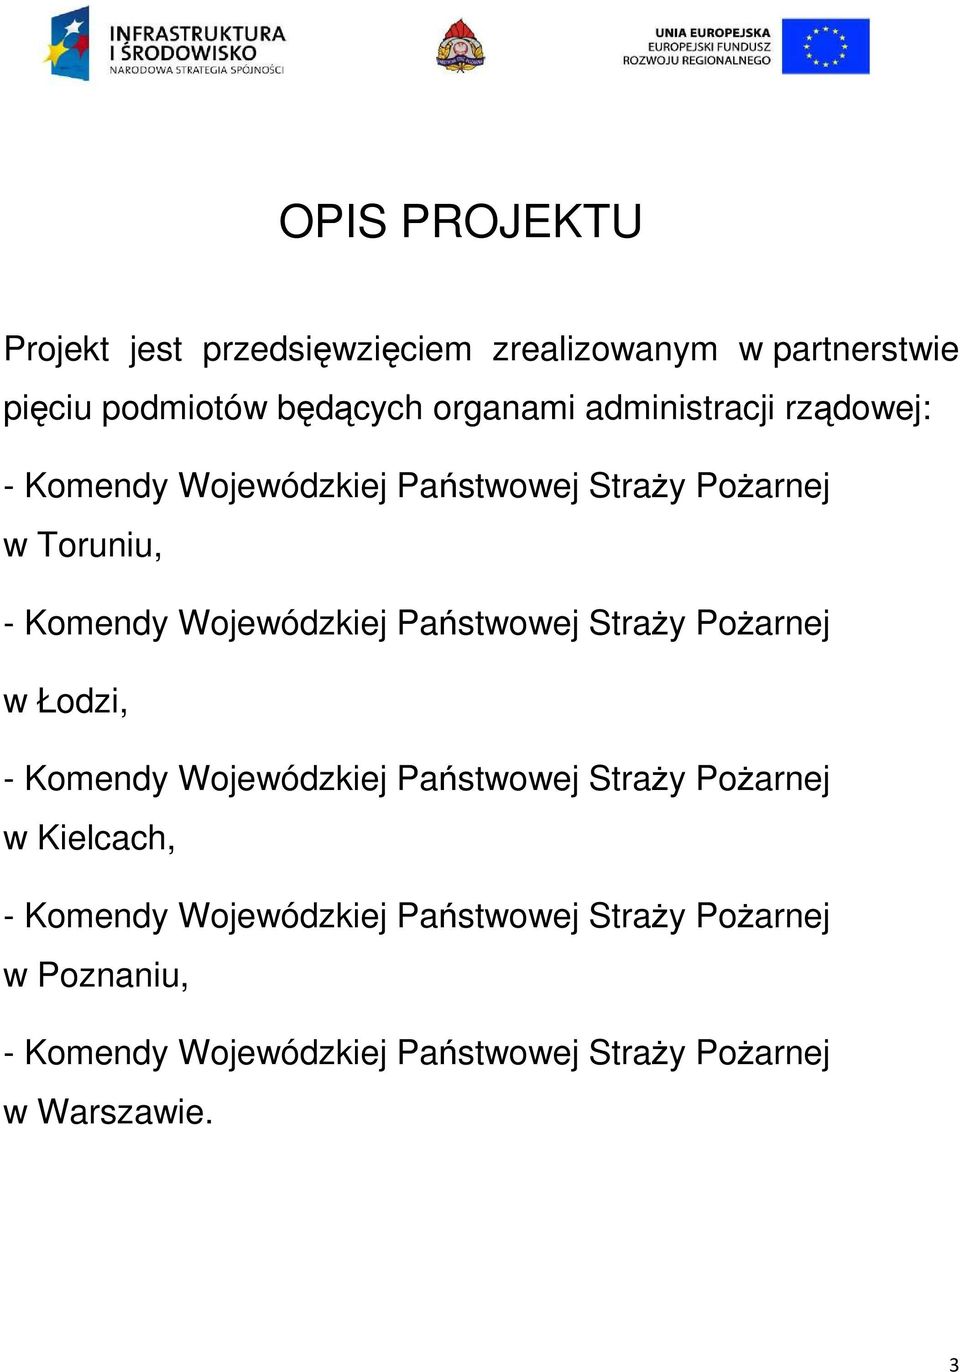 Państwowej Straży Pożarnej w Łodzi, - Komendy Wojewódzkiej Państwowej Straży Pożarnej w Kielcach, - Komendy